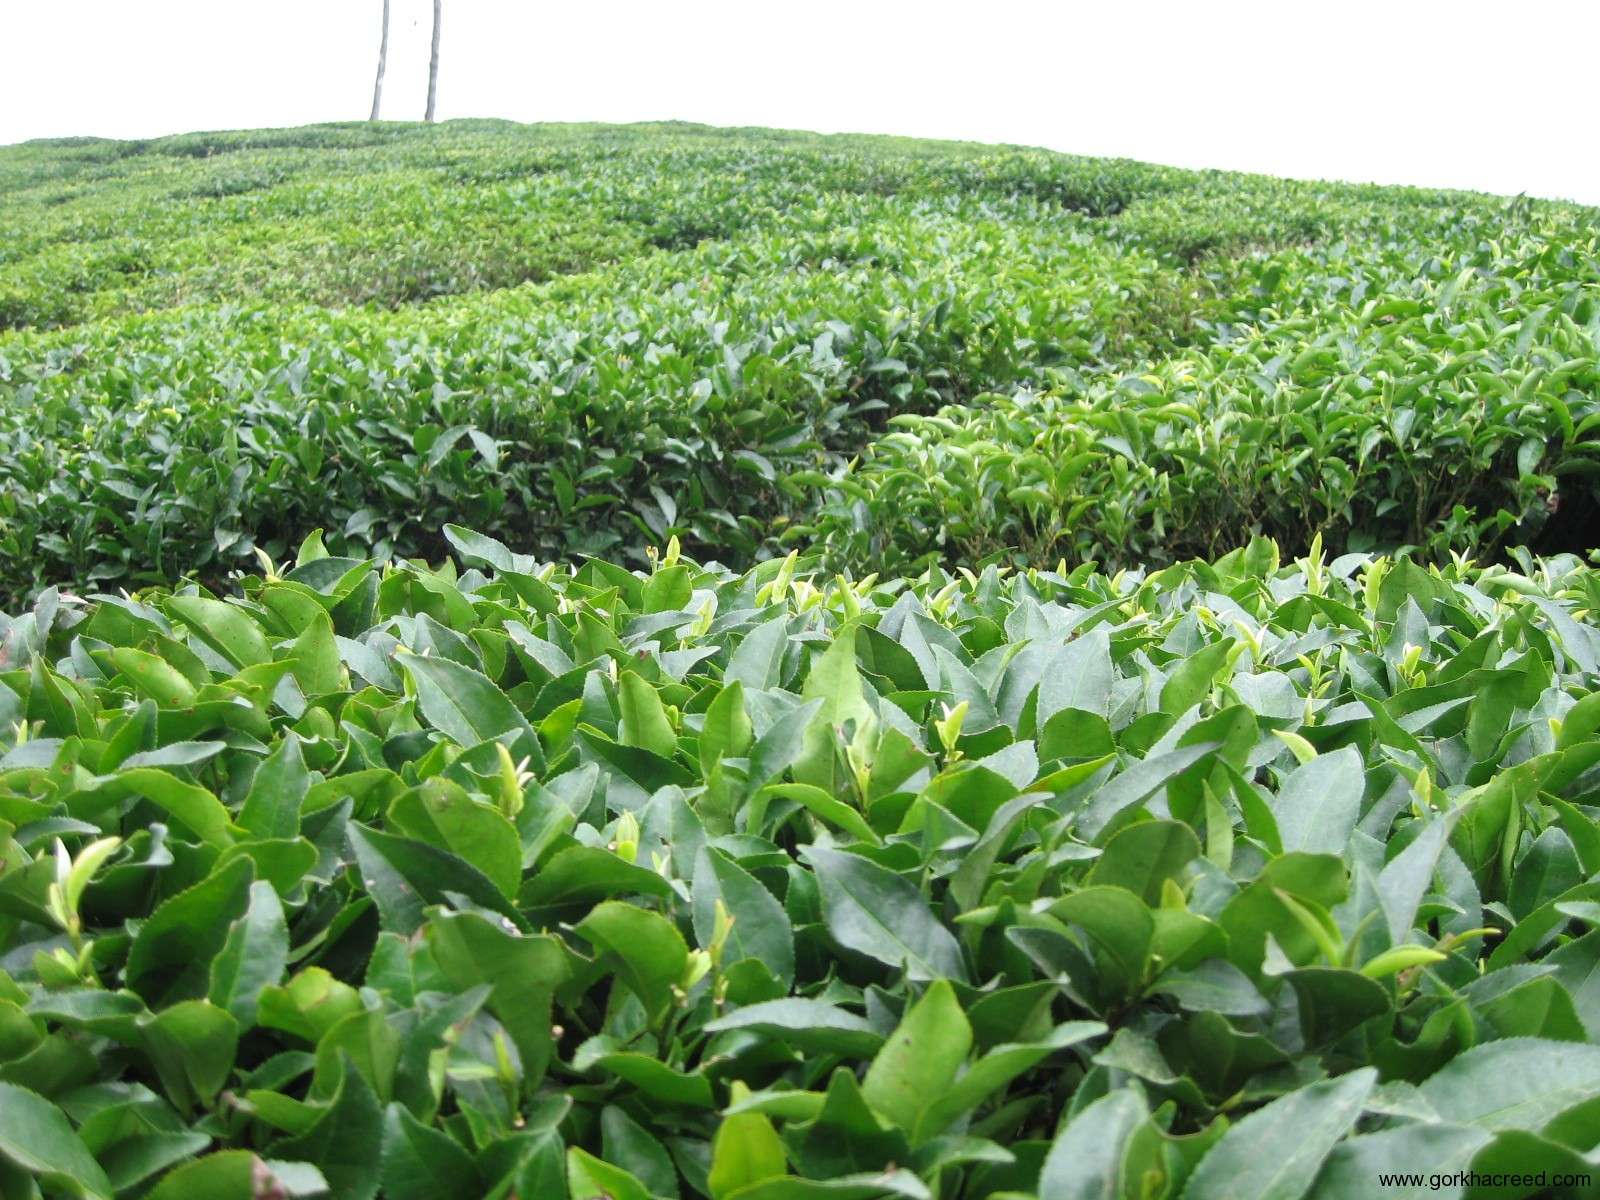 103میلیارد تومان از مطالبات چایکاران پرداخت شد/ کاهش 6درصدی تحویل برگ سبز چای